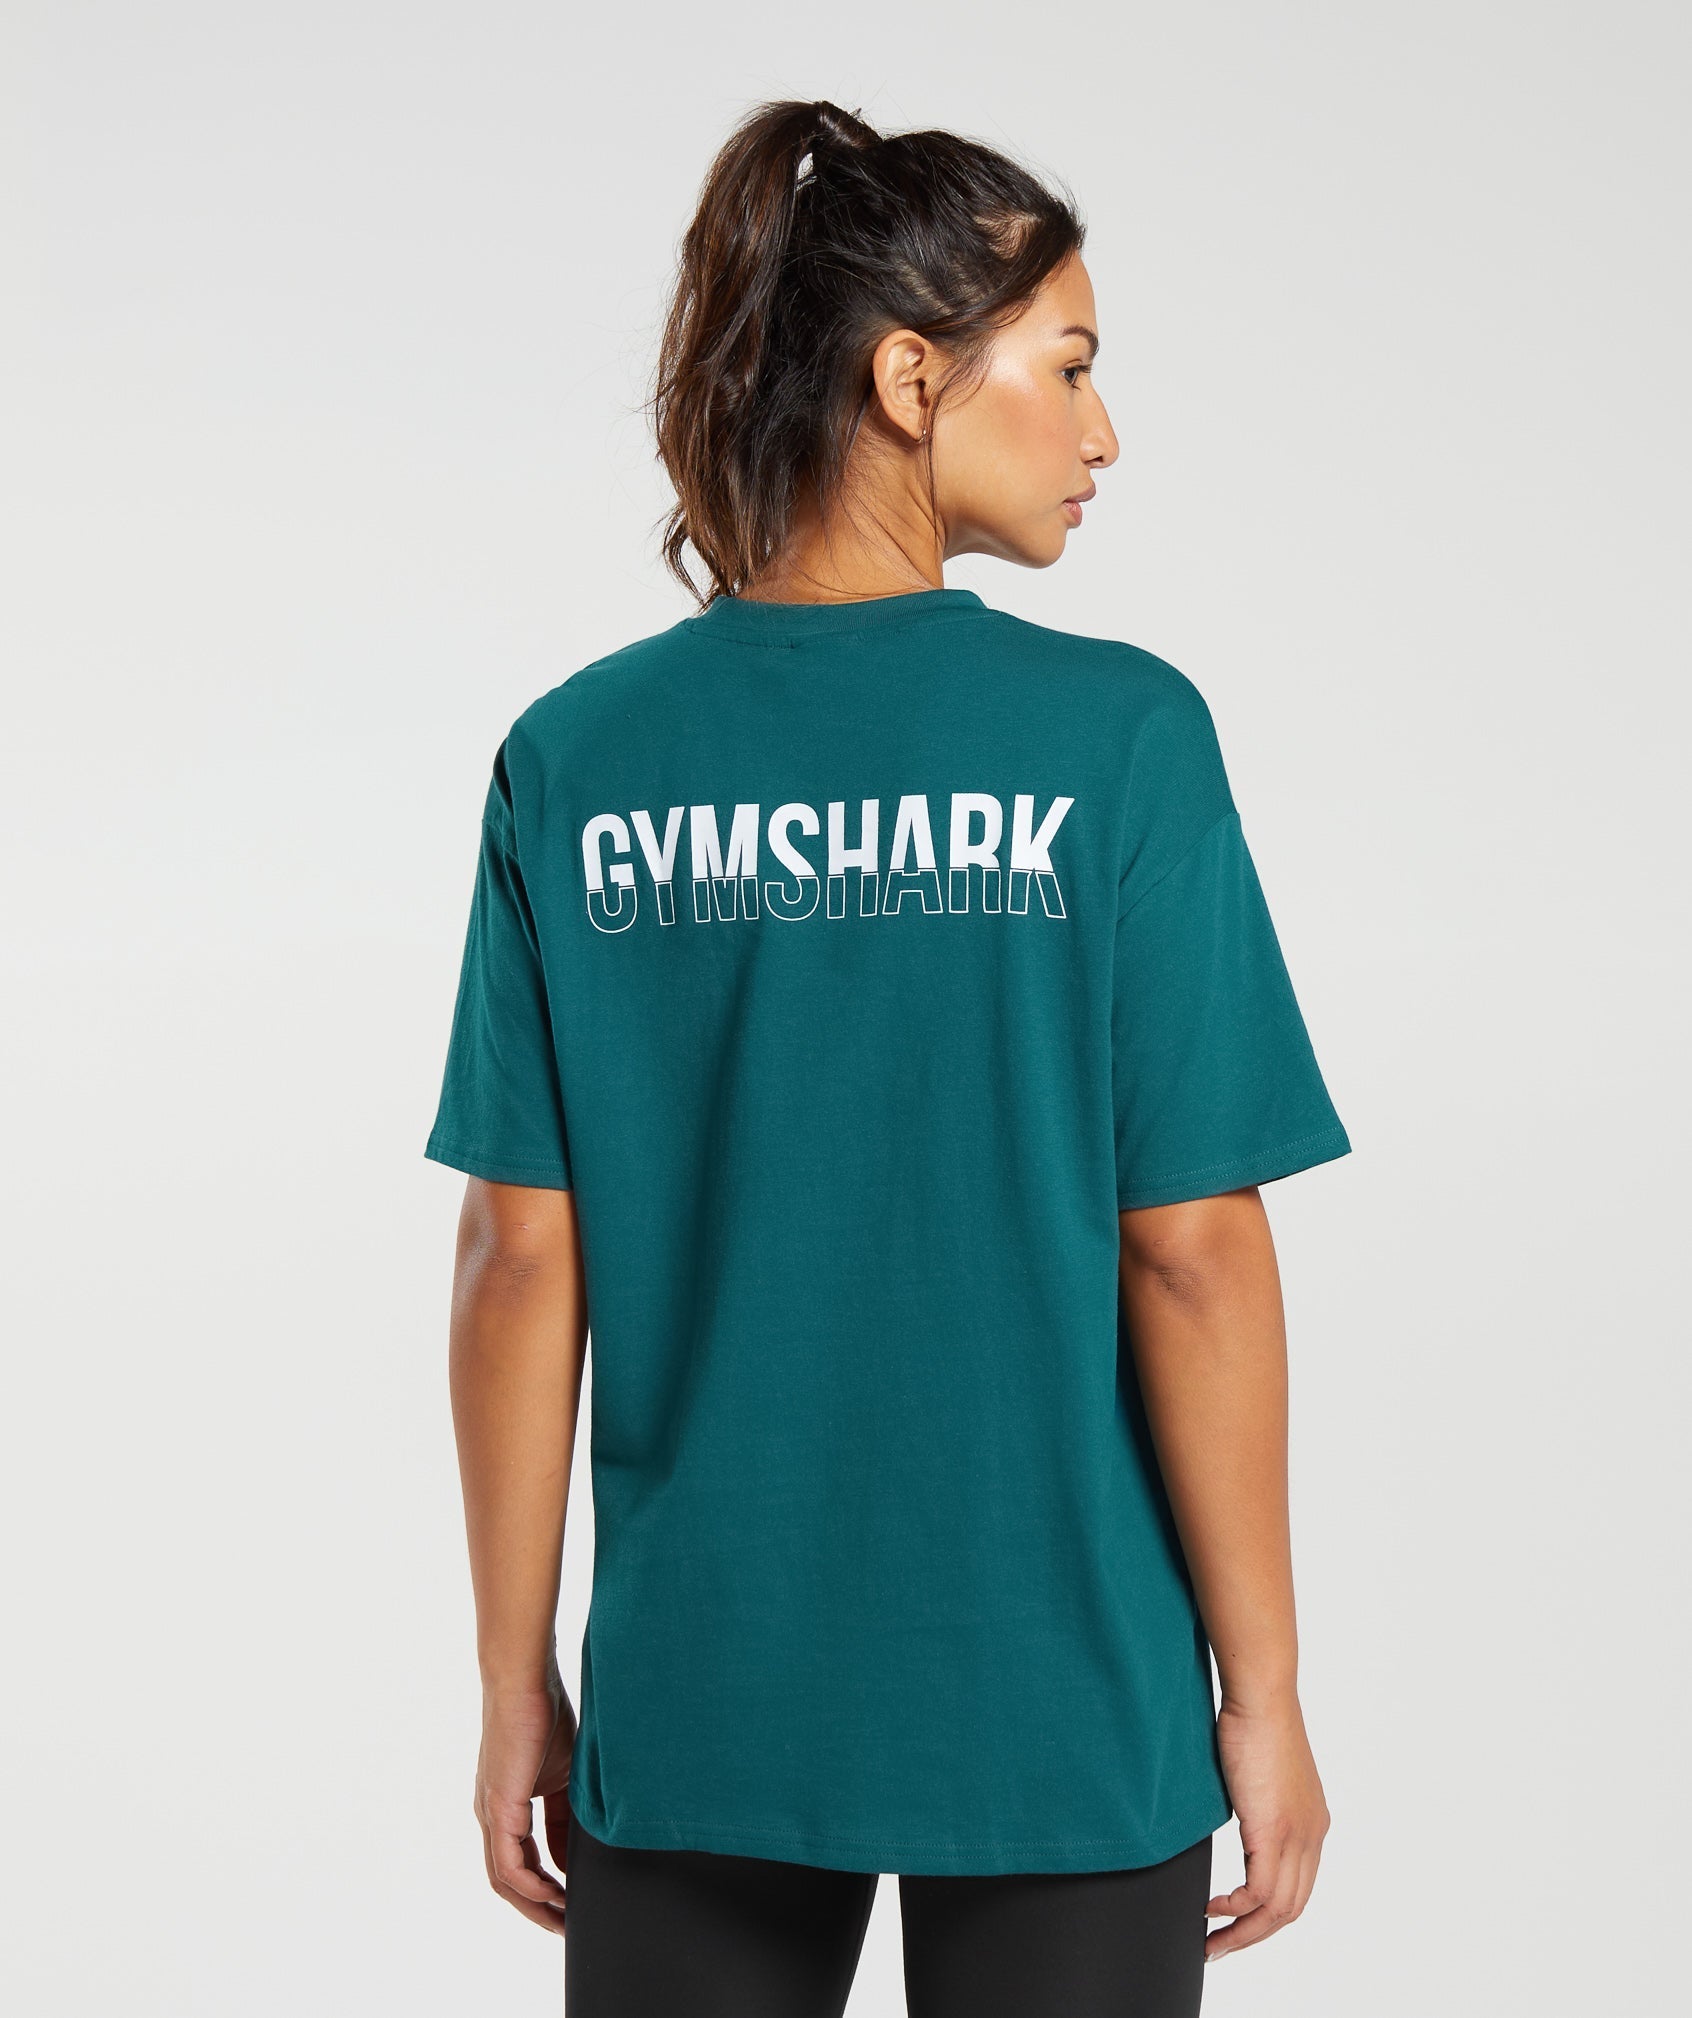 Gymshark Fraction Oversized T-Shirt - White